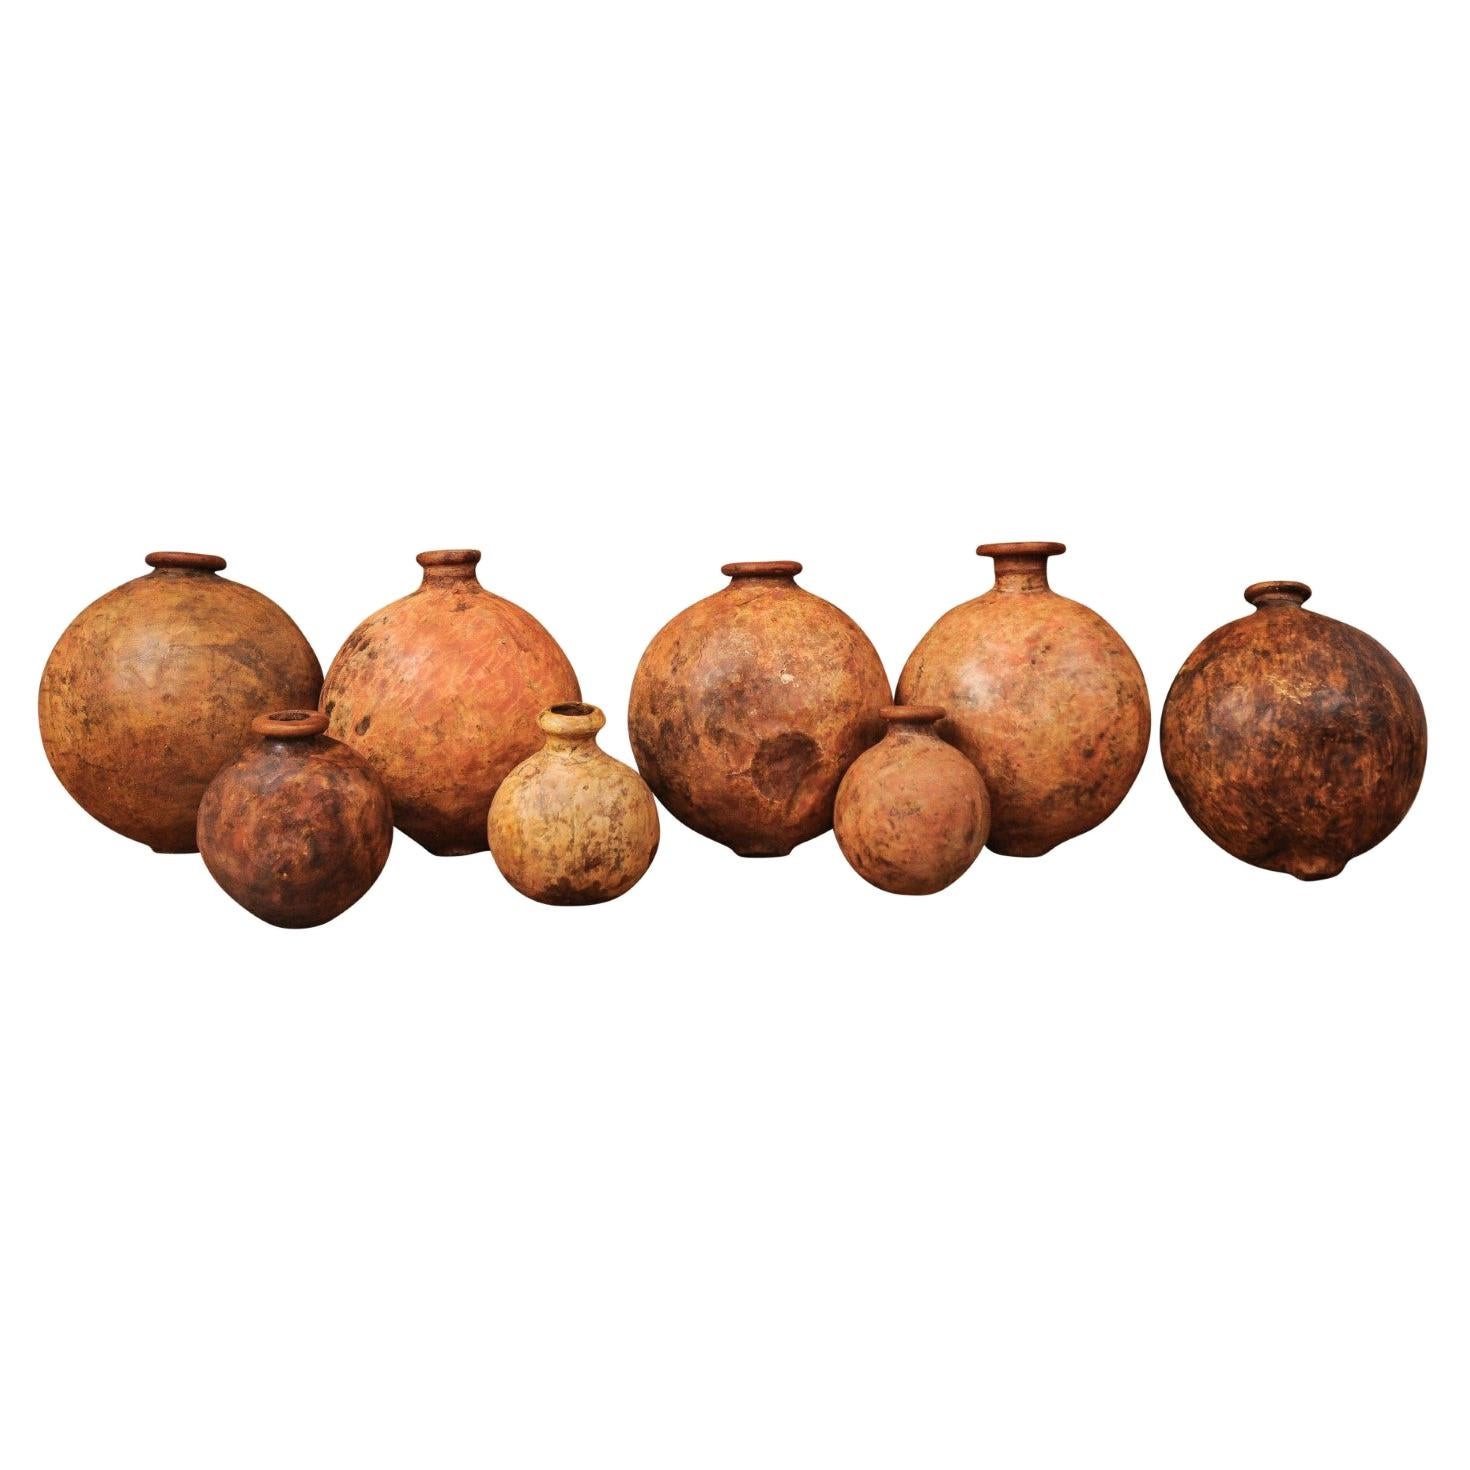 Rustikale spanische Wein- oder Oliven-Ölgefäße aus den 1830er Jahren mit abgenutzter Patina, verkauft pro Stück